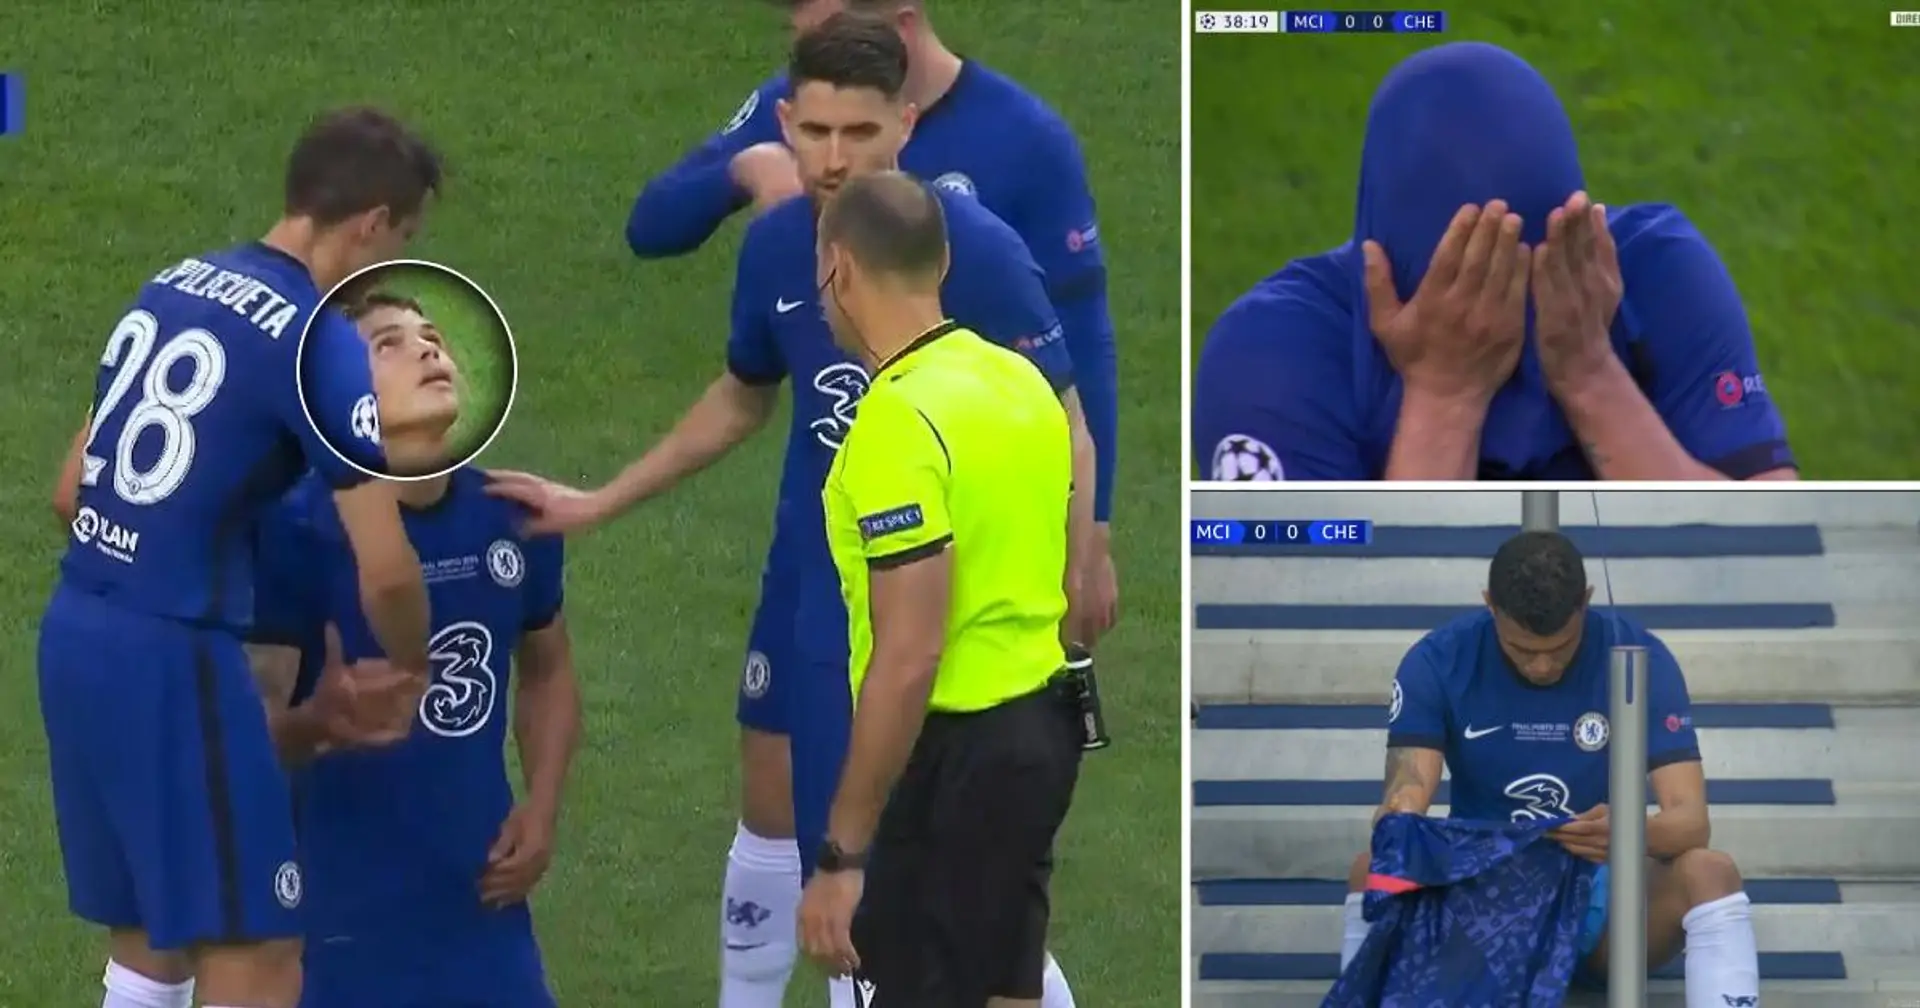 Herzzerreißend. Thiago Silvas Emotionen nach seiner verletzungsbedingten Auswechslung im Champions-League-Finale